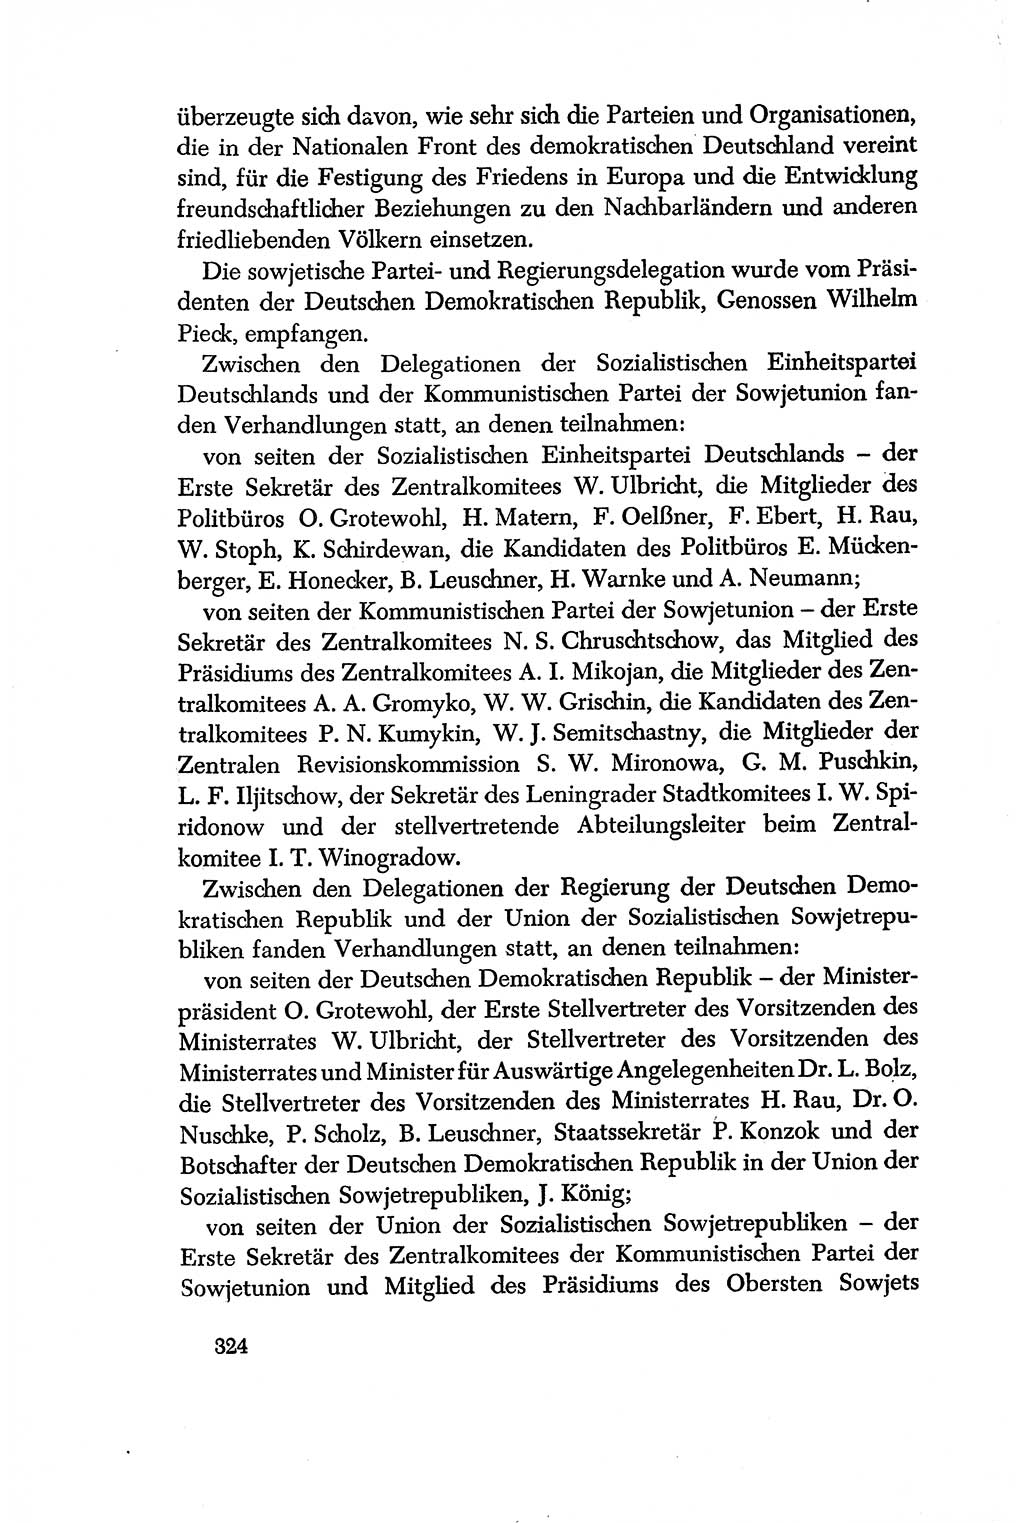 Dokumente der Sozialistischen Einheitspartei Deutschlands (SED) [Deutsche Demokratische Republik (DDR)] 1956-1957, Seite 324 (Dok. SED DDR 1956-1957, S. 324)